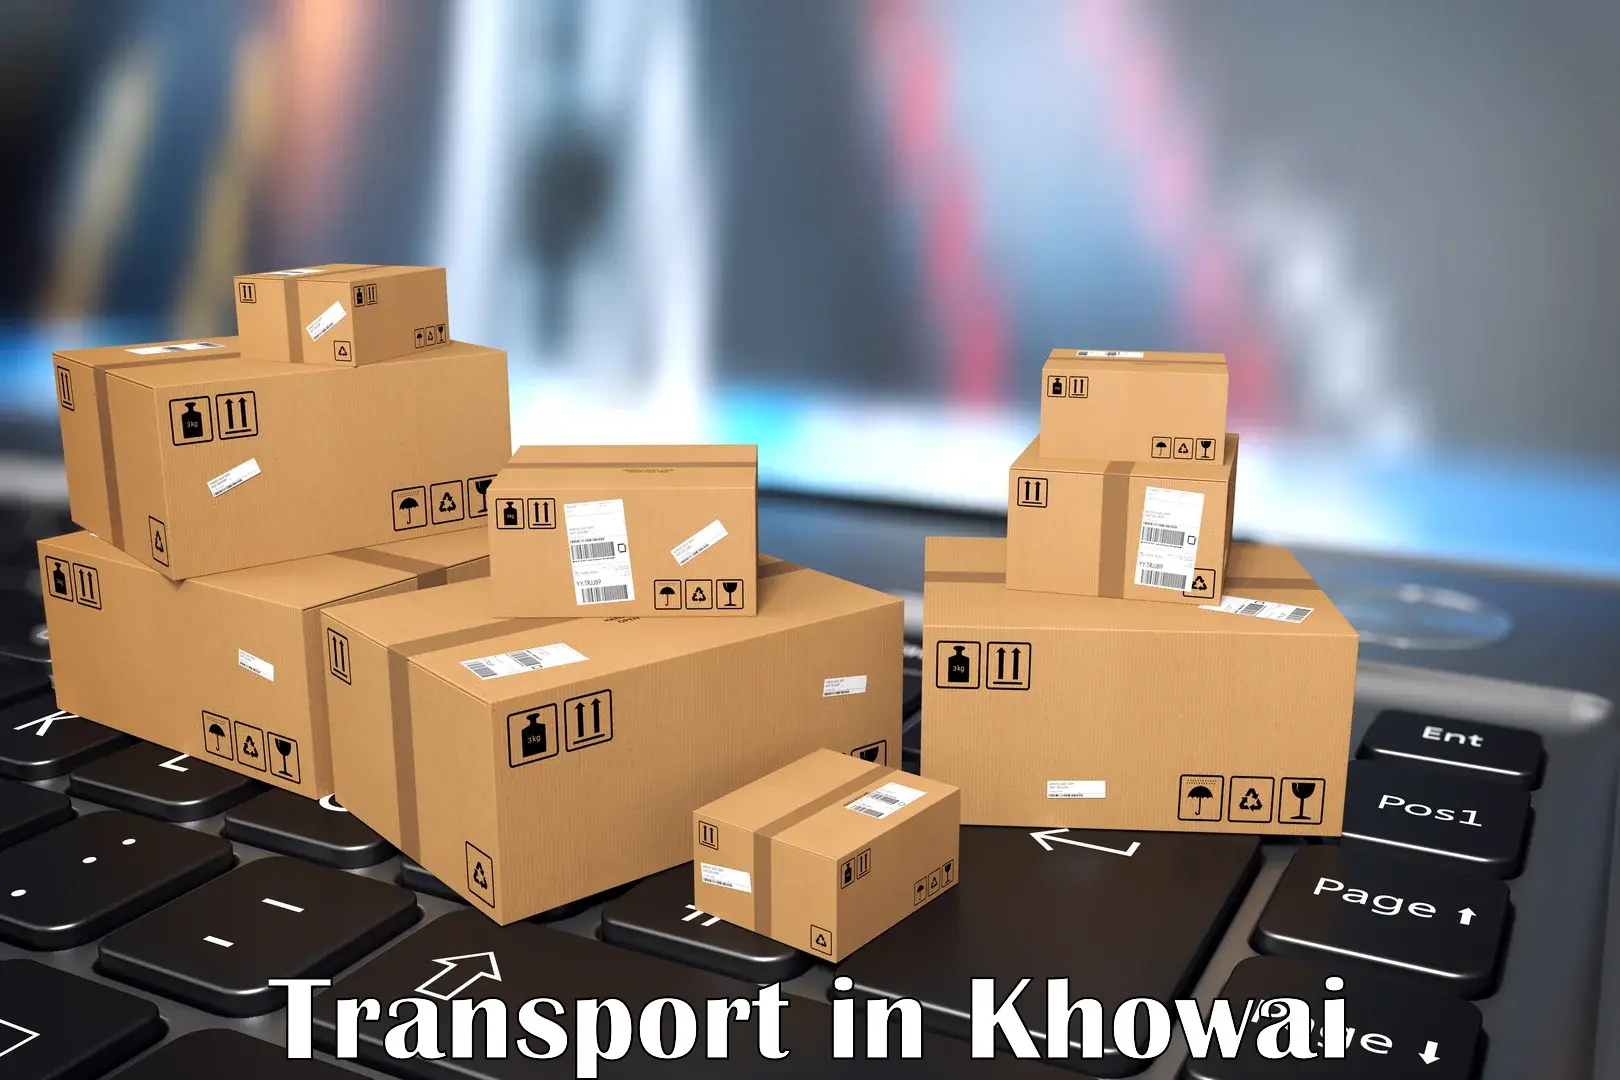 Nearest transport service in Khowai